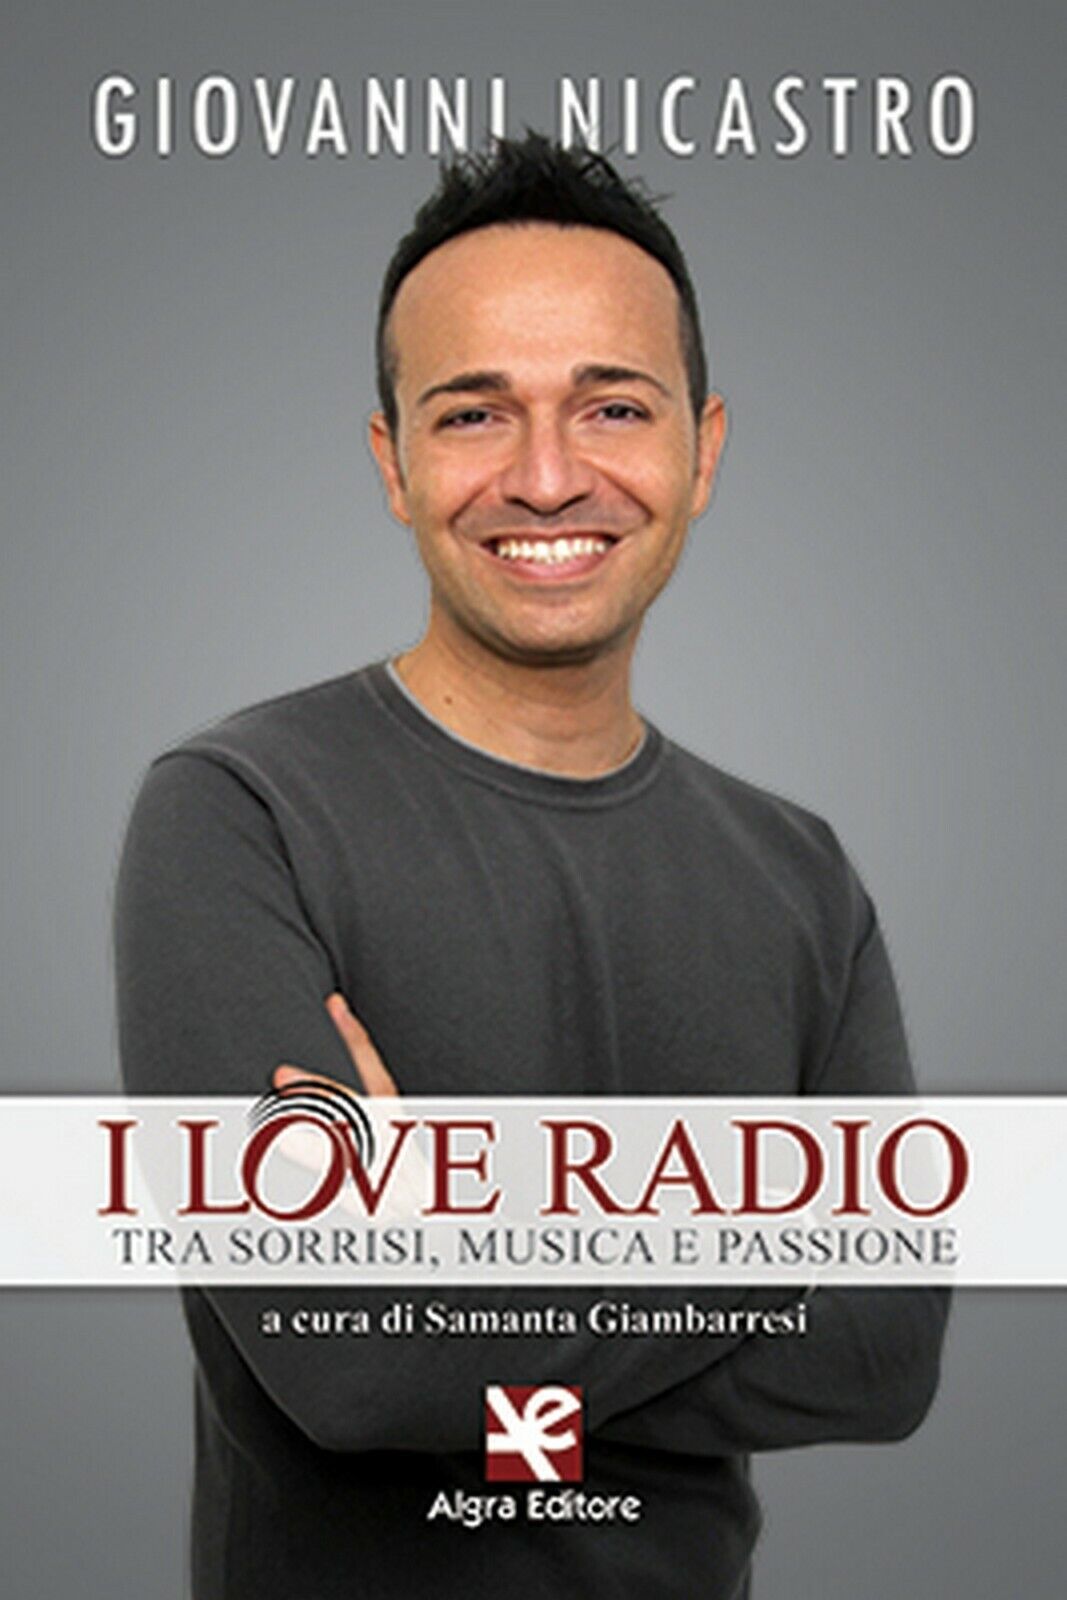 I love radio. Tra sorrisi, musica e passione, Giovanni Nicastro,  Algra Editore